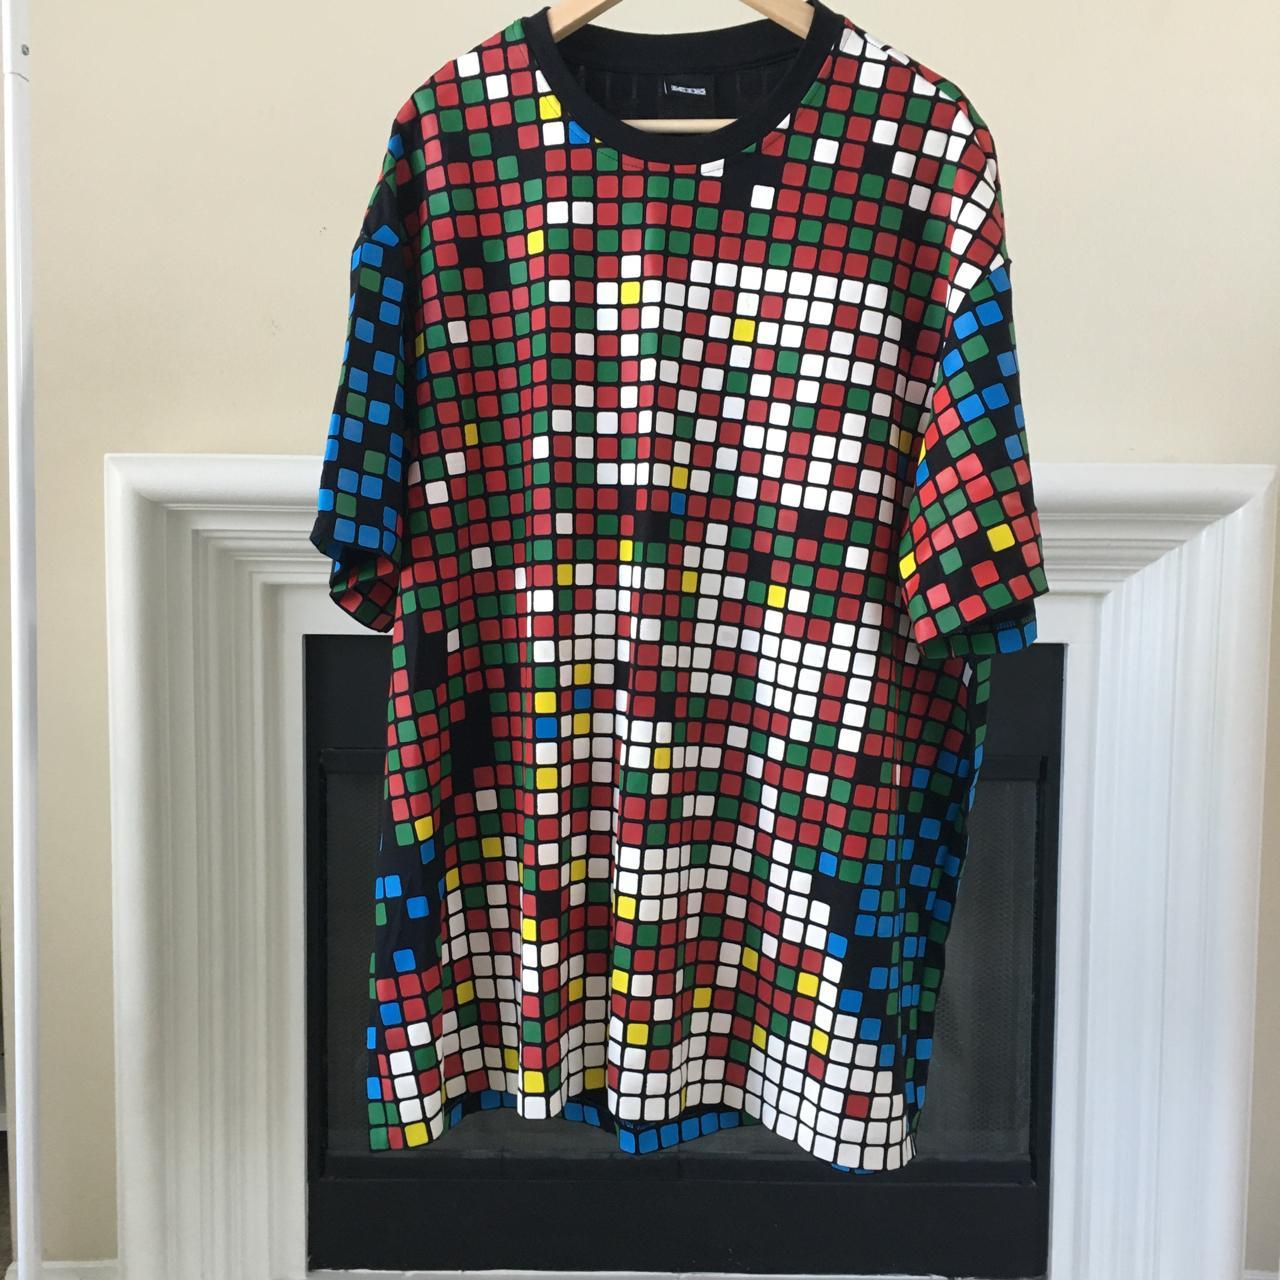 Pixels and Cubes T-shirt